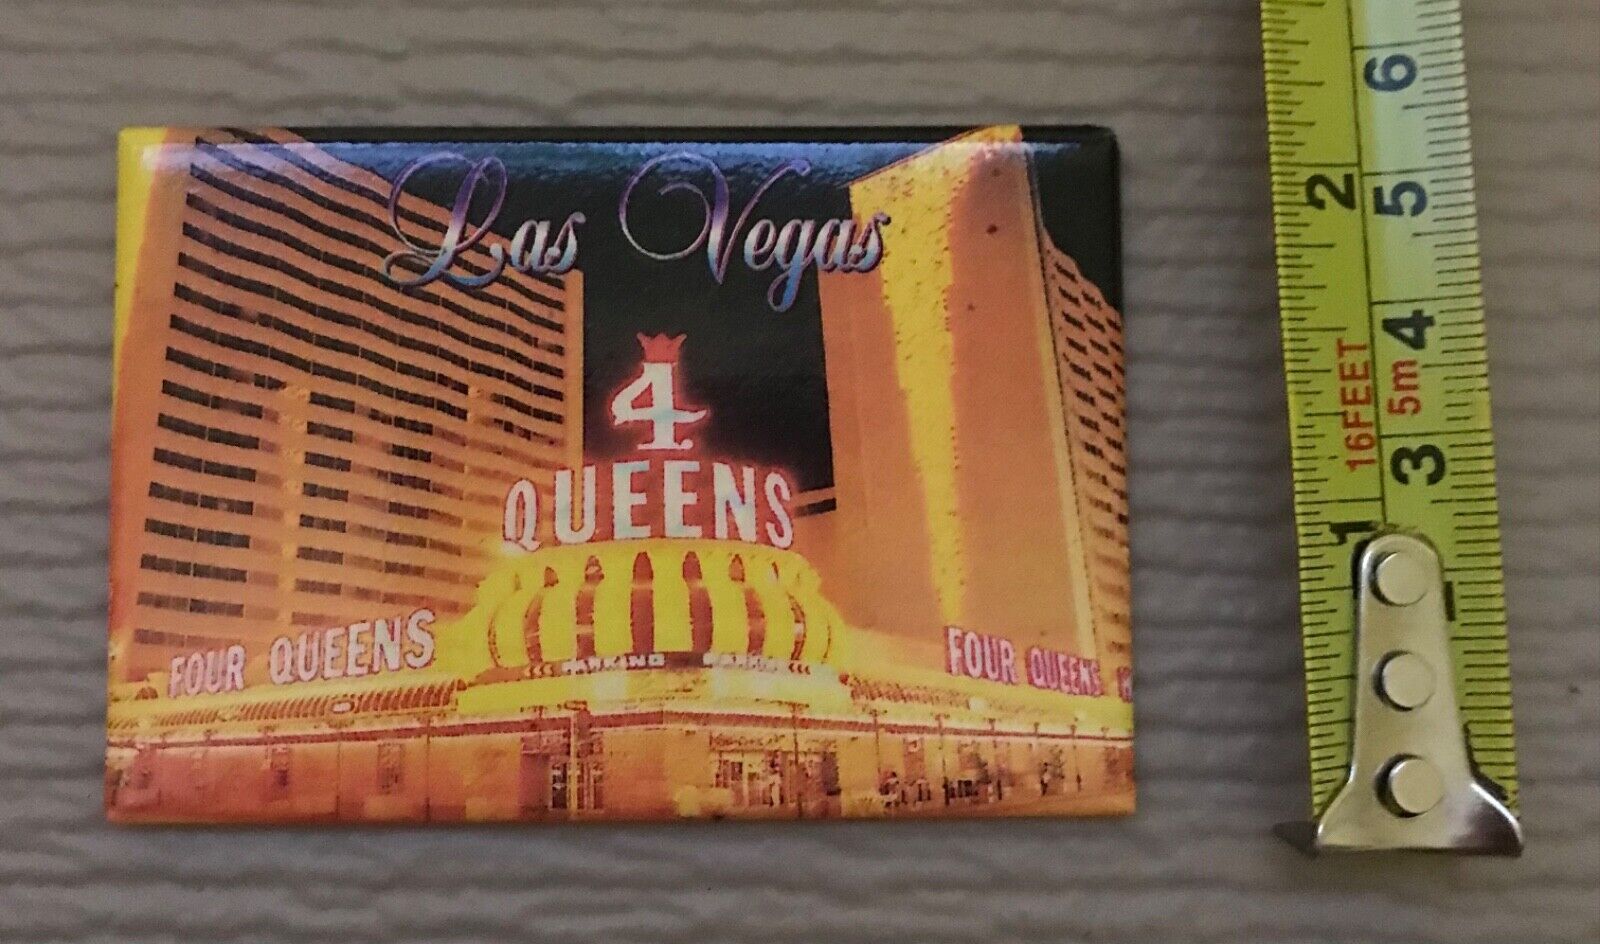 Four Queens Hotel Casino Las Vegas magnet